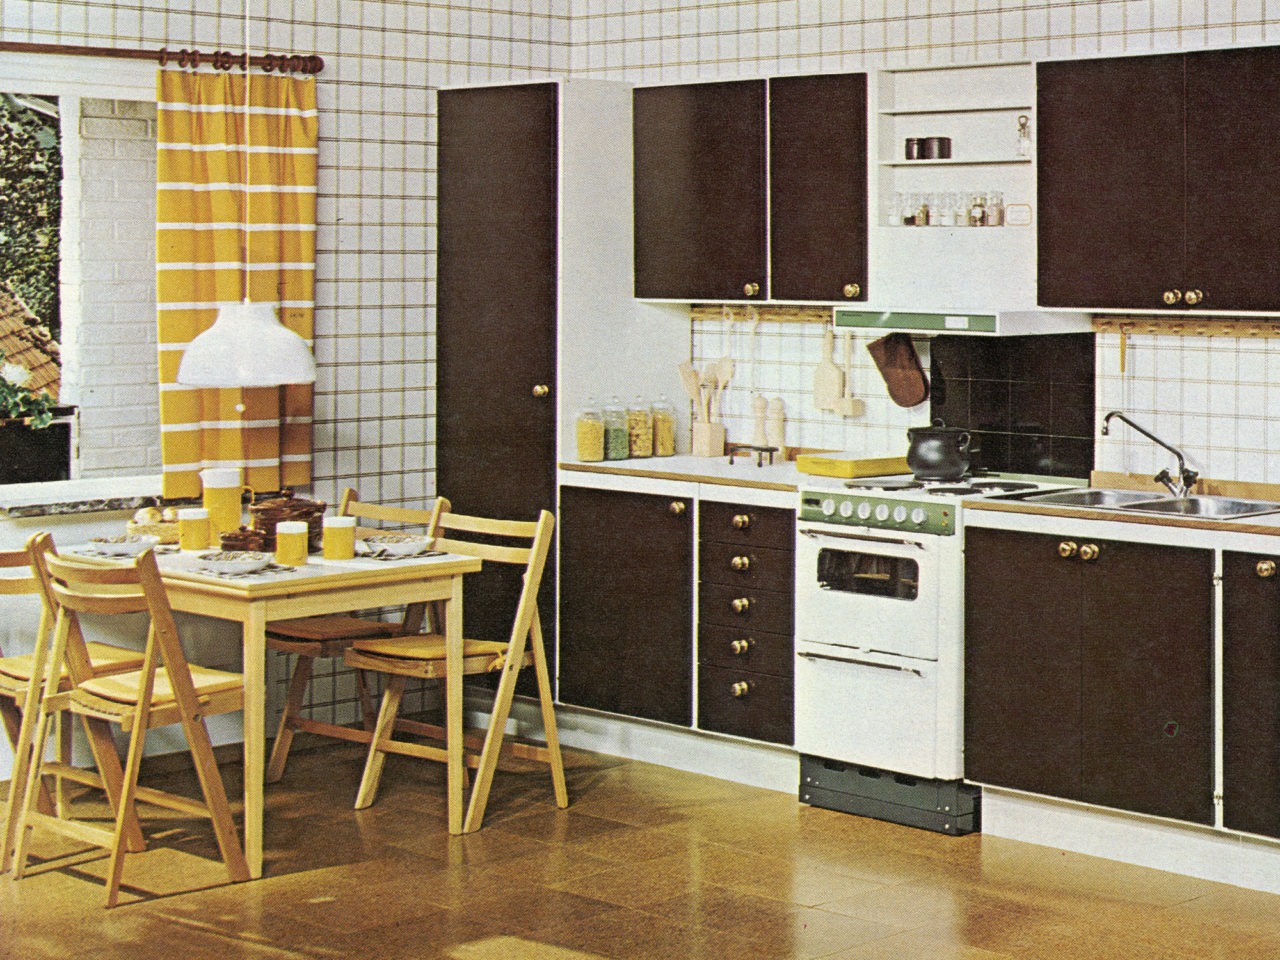 Küche mit Korkmusterboden. Braune Fronten, weißer Herd, Spülmaschine, karierte weiße Tapete, Esstisch und Stühle aus Holz.